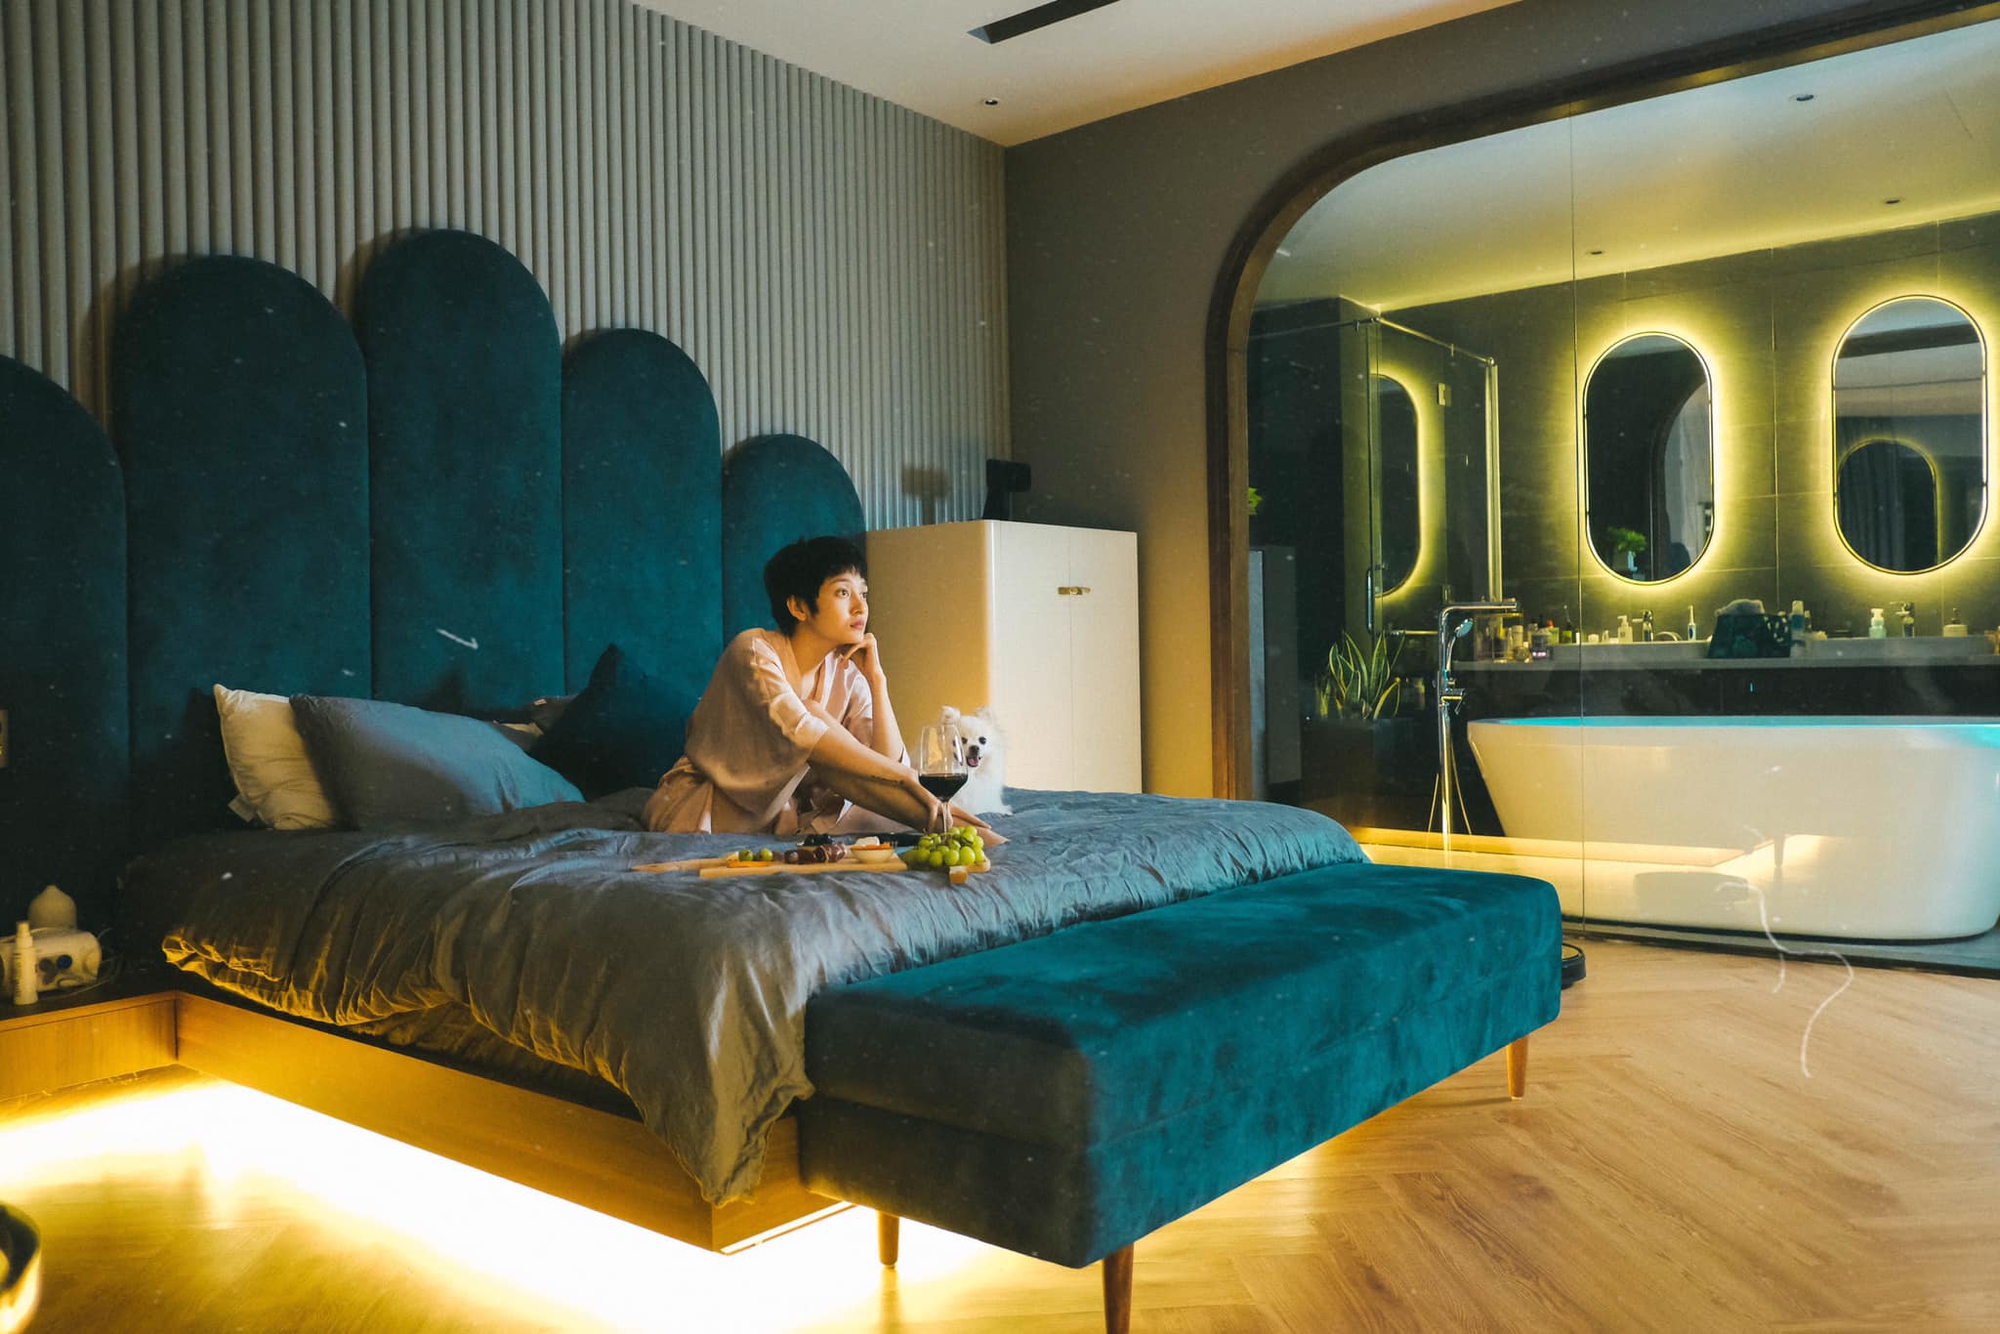 Căn hộ của Bảo Anh: Phòng khách tông xám trầm cá tính, phòng ngủ xanh đậm sang trọng, đẹp như studio - Ảnh 7.